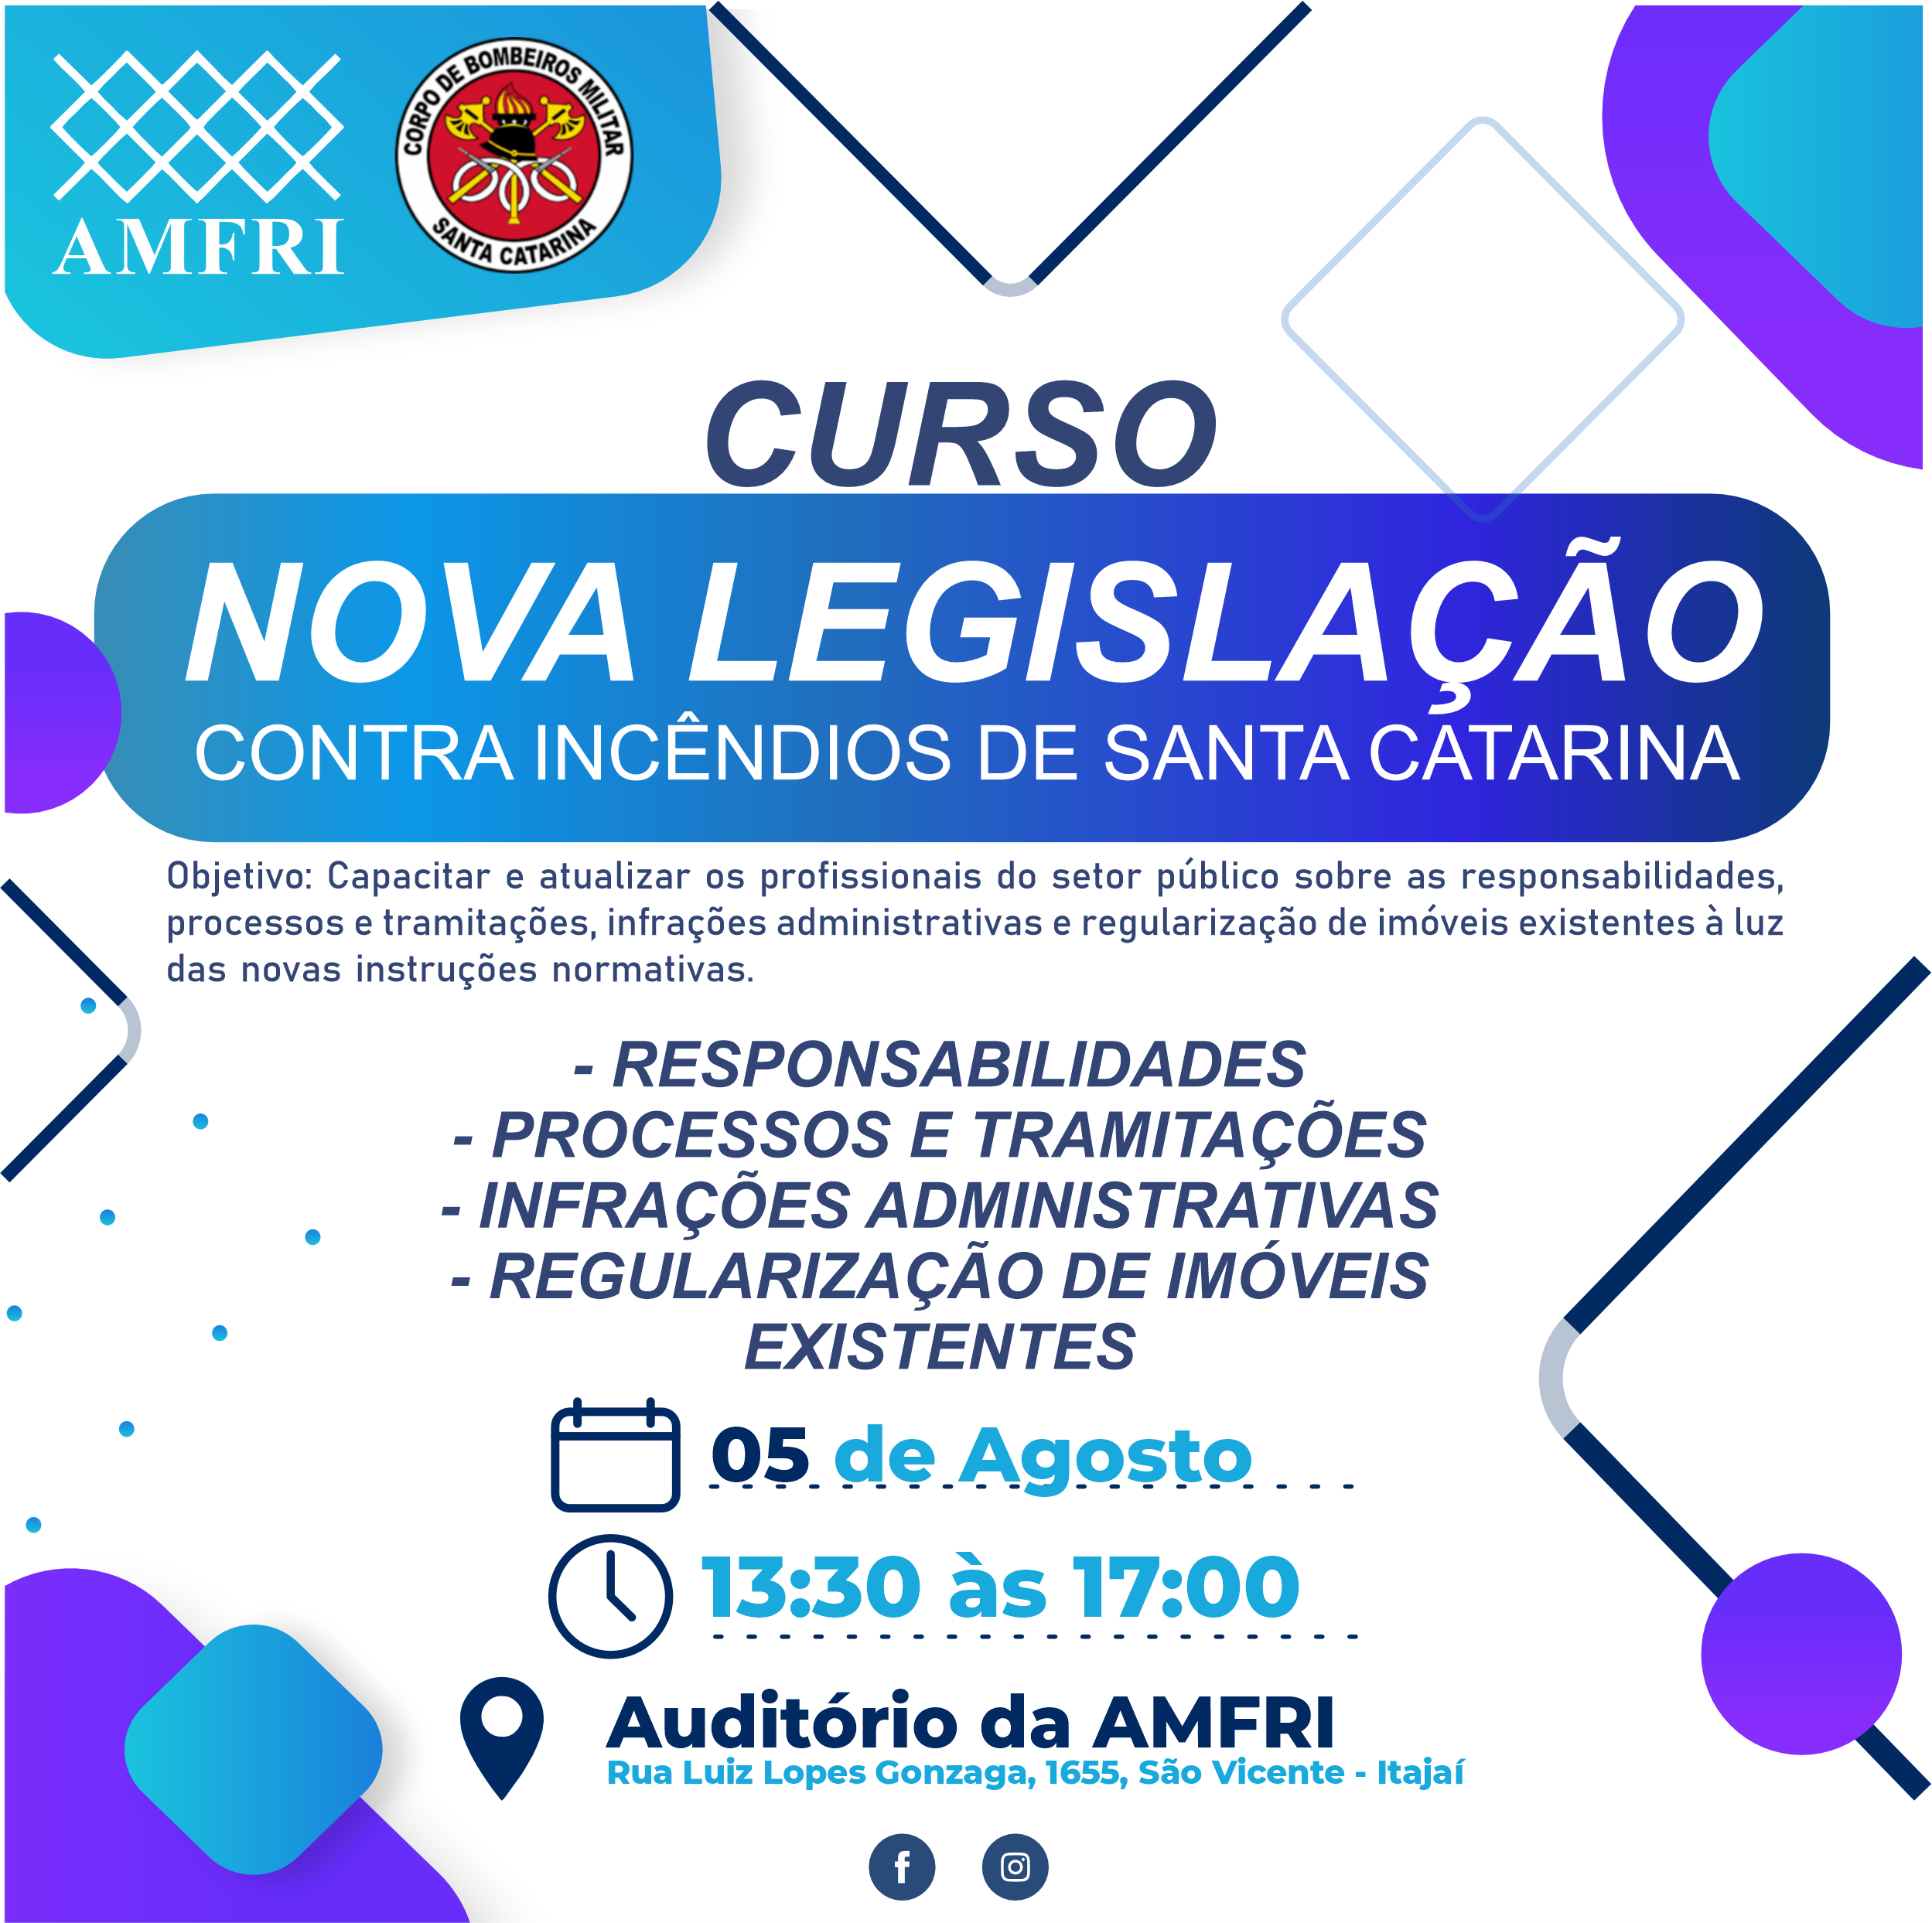 You are currently viewing Curso: Nova legislação contra incêndios de Santa Catarina